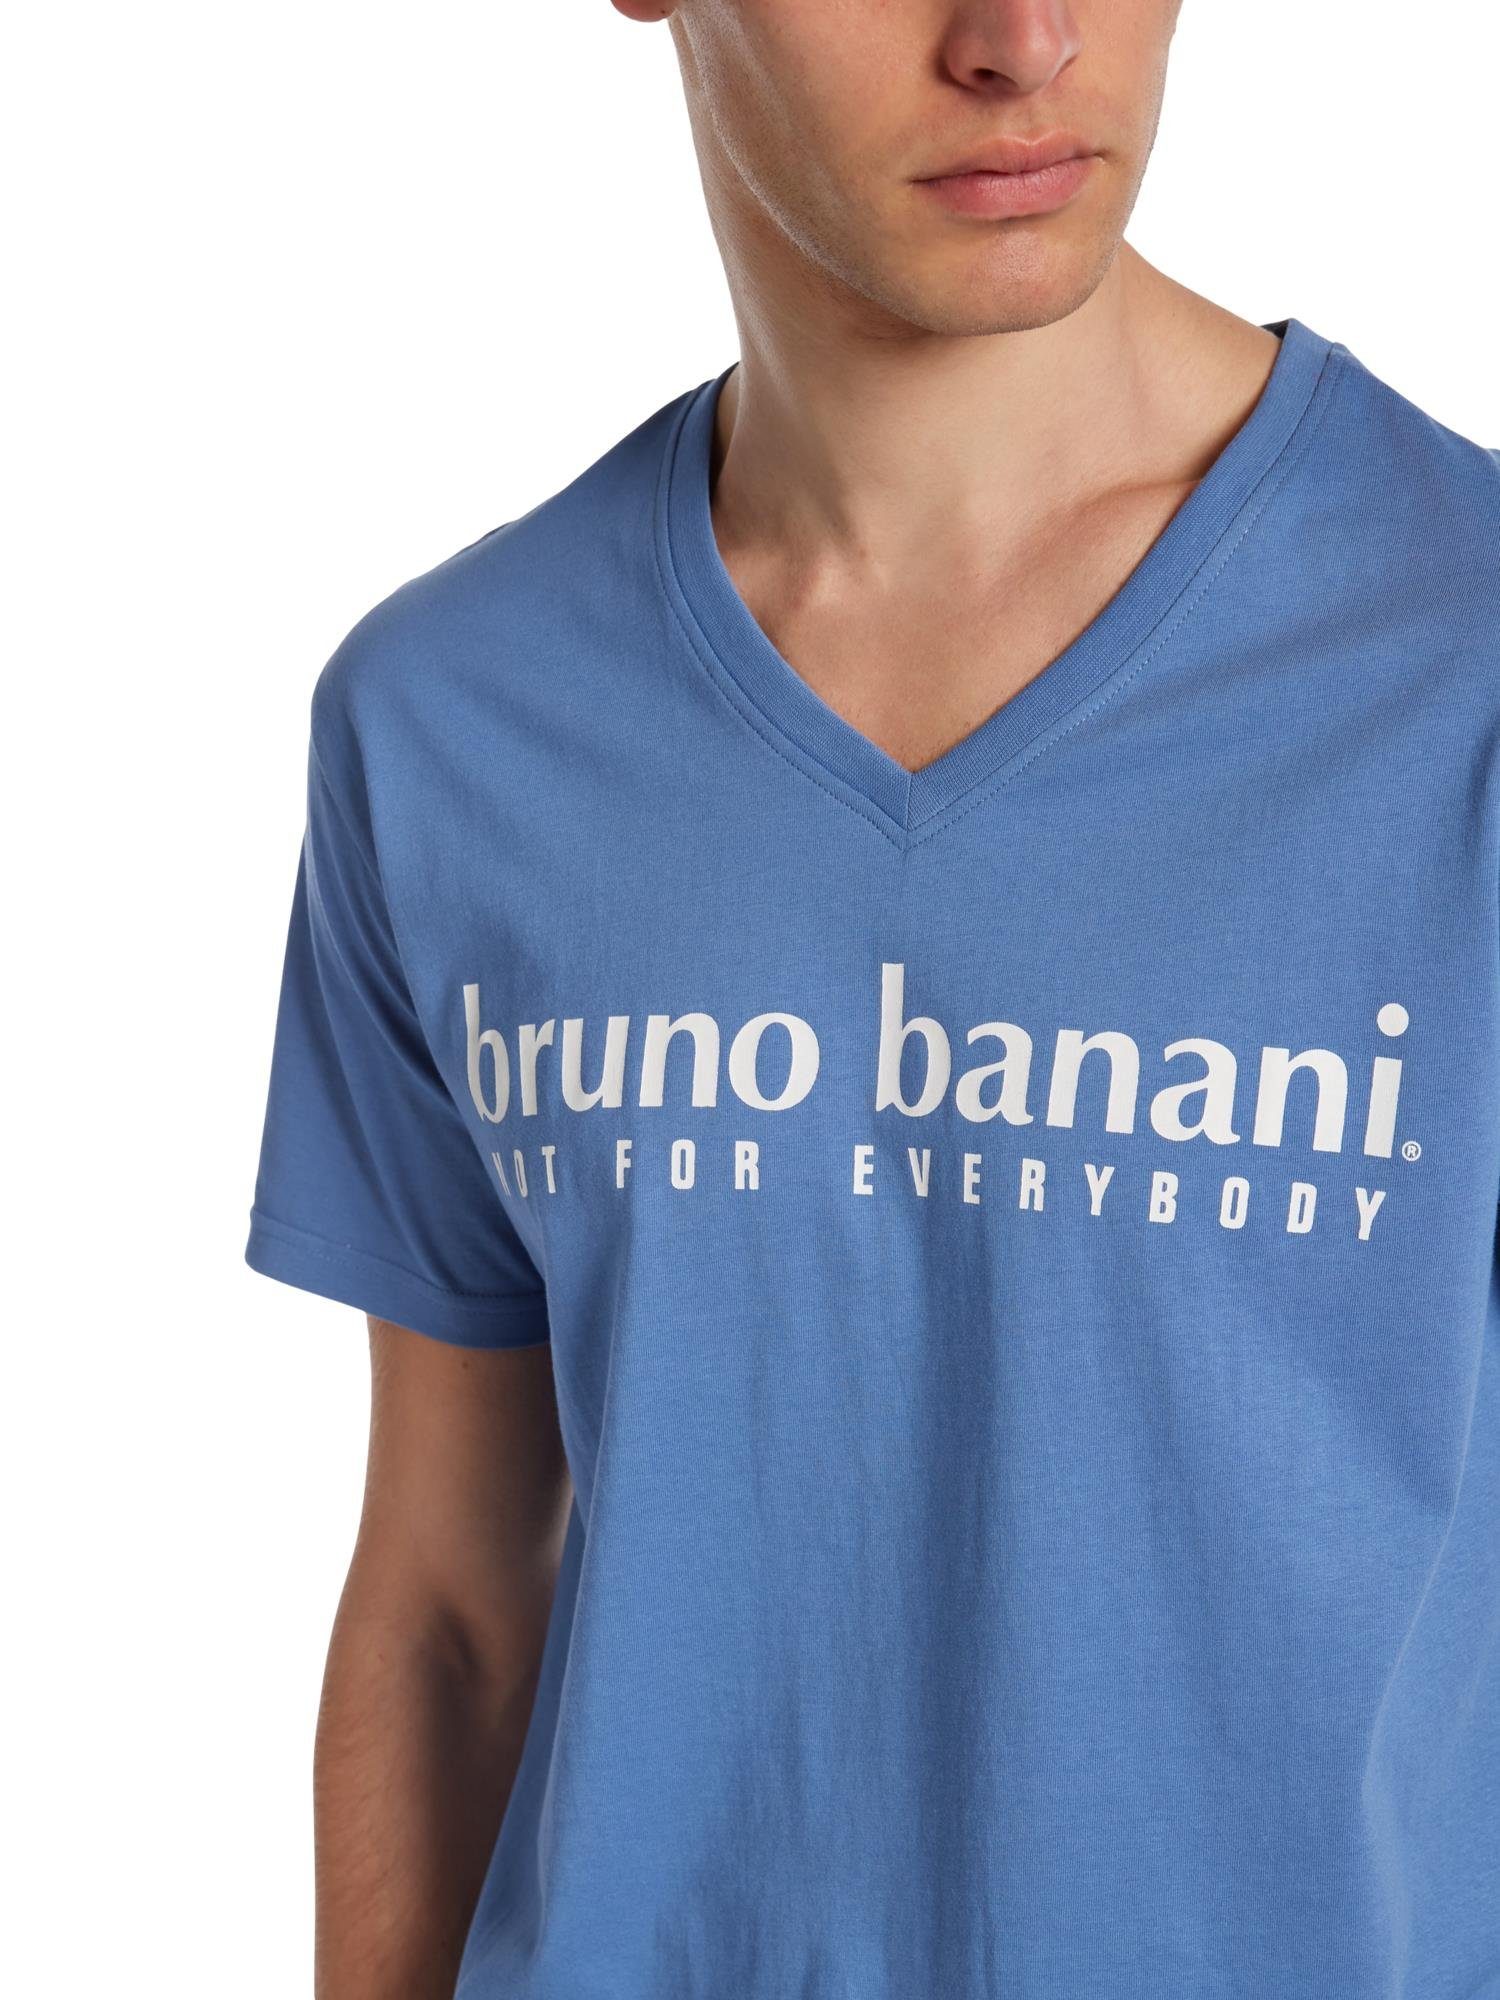 Bruno Banani T-Shirt Blau Battle